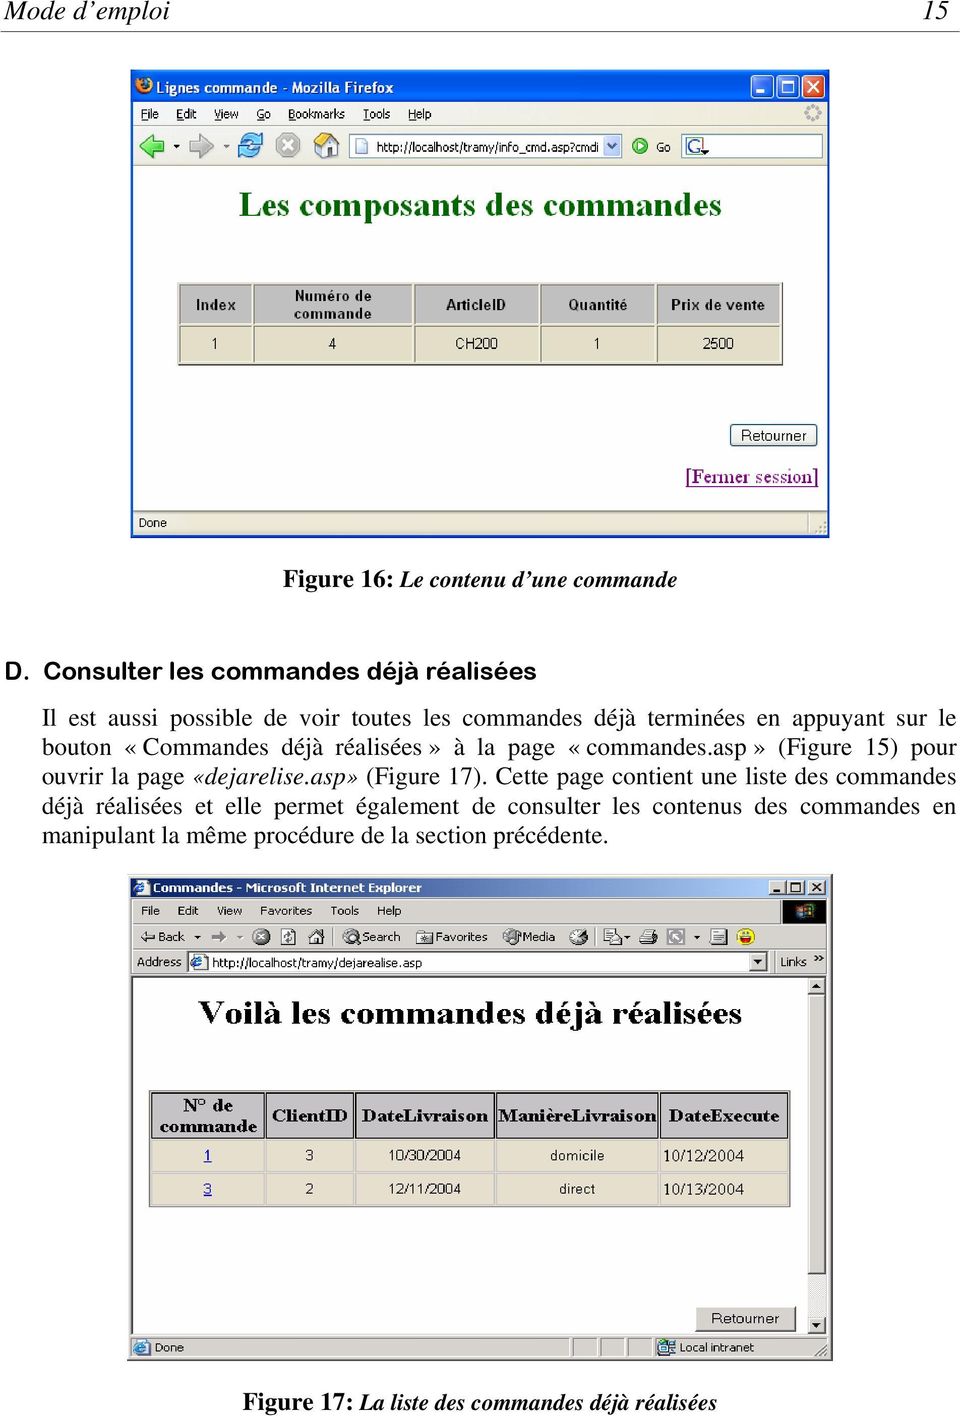 «Commandes déjà réalisées» à la page «commandes.asp» (Figure 15) pour ouvrir la page «dejarelise.asp» (Figure 17).